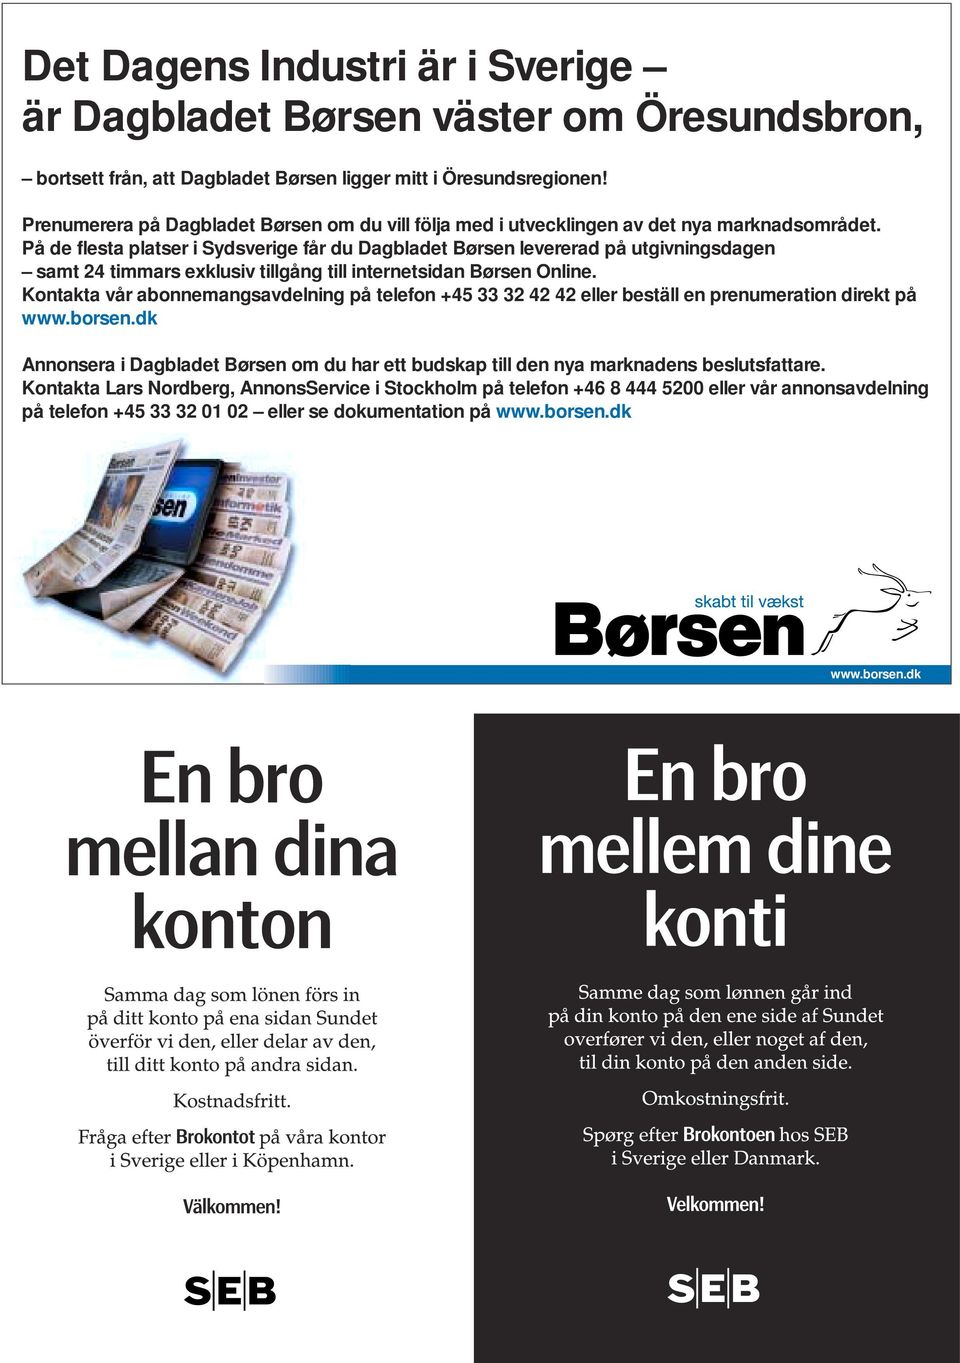 På de flesta platser i Sydsverige får du Dagbladet Børsen levererad på utgivningsdagen samt 24 timmars exklusiv tillgång till internetsidan Børsen Online.